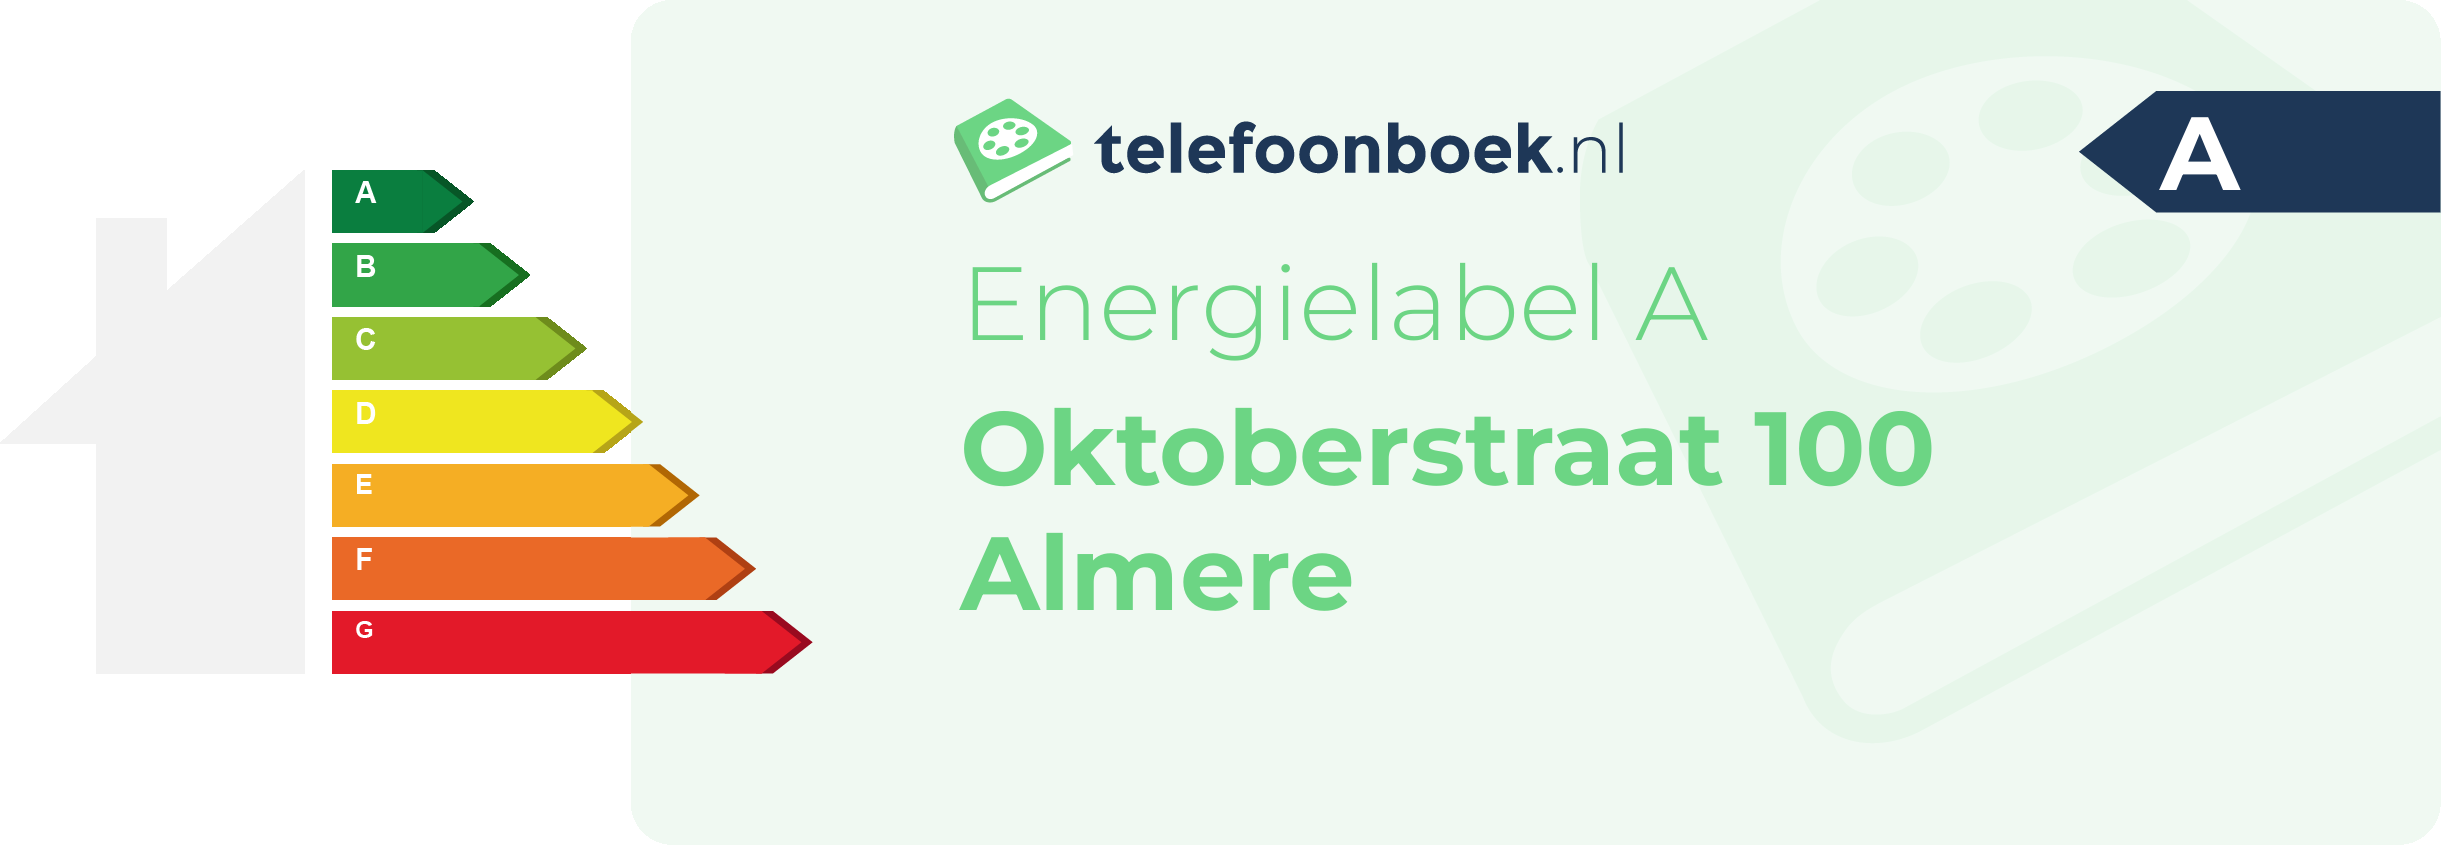 Energielabel Oktoberstraat 100 Almere